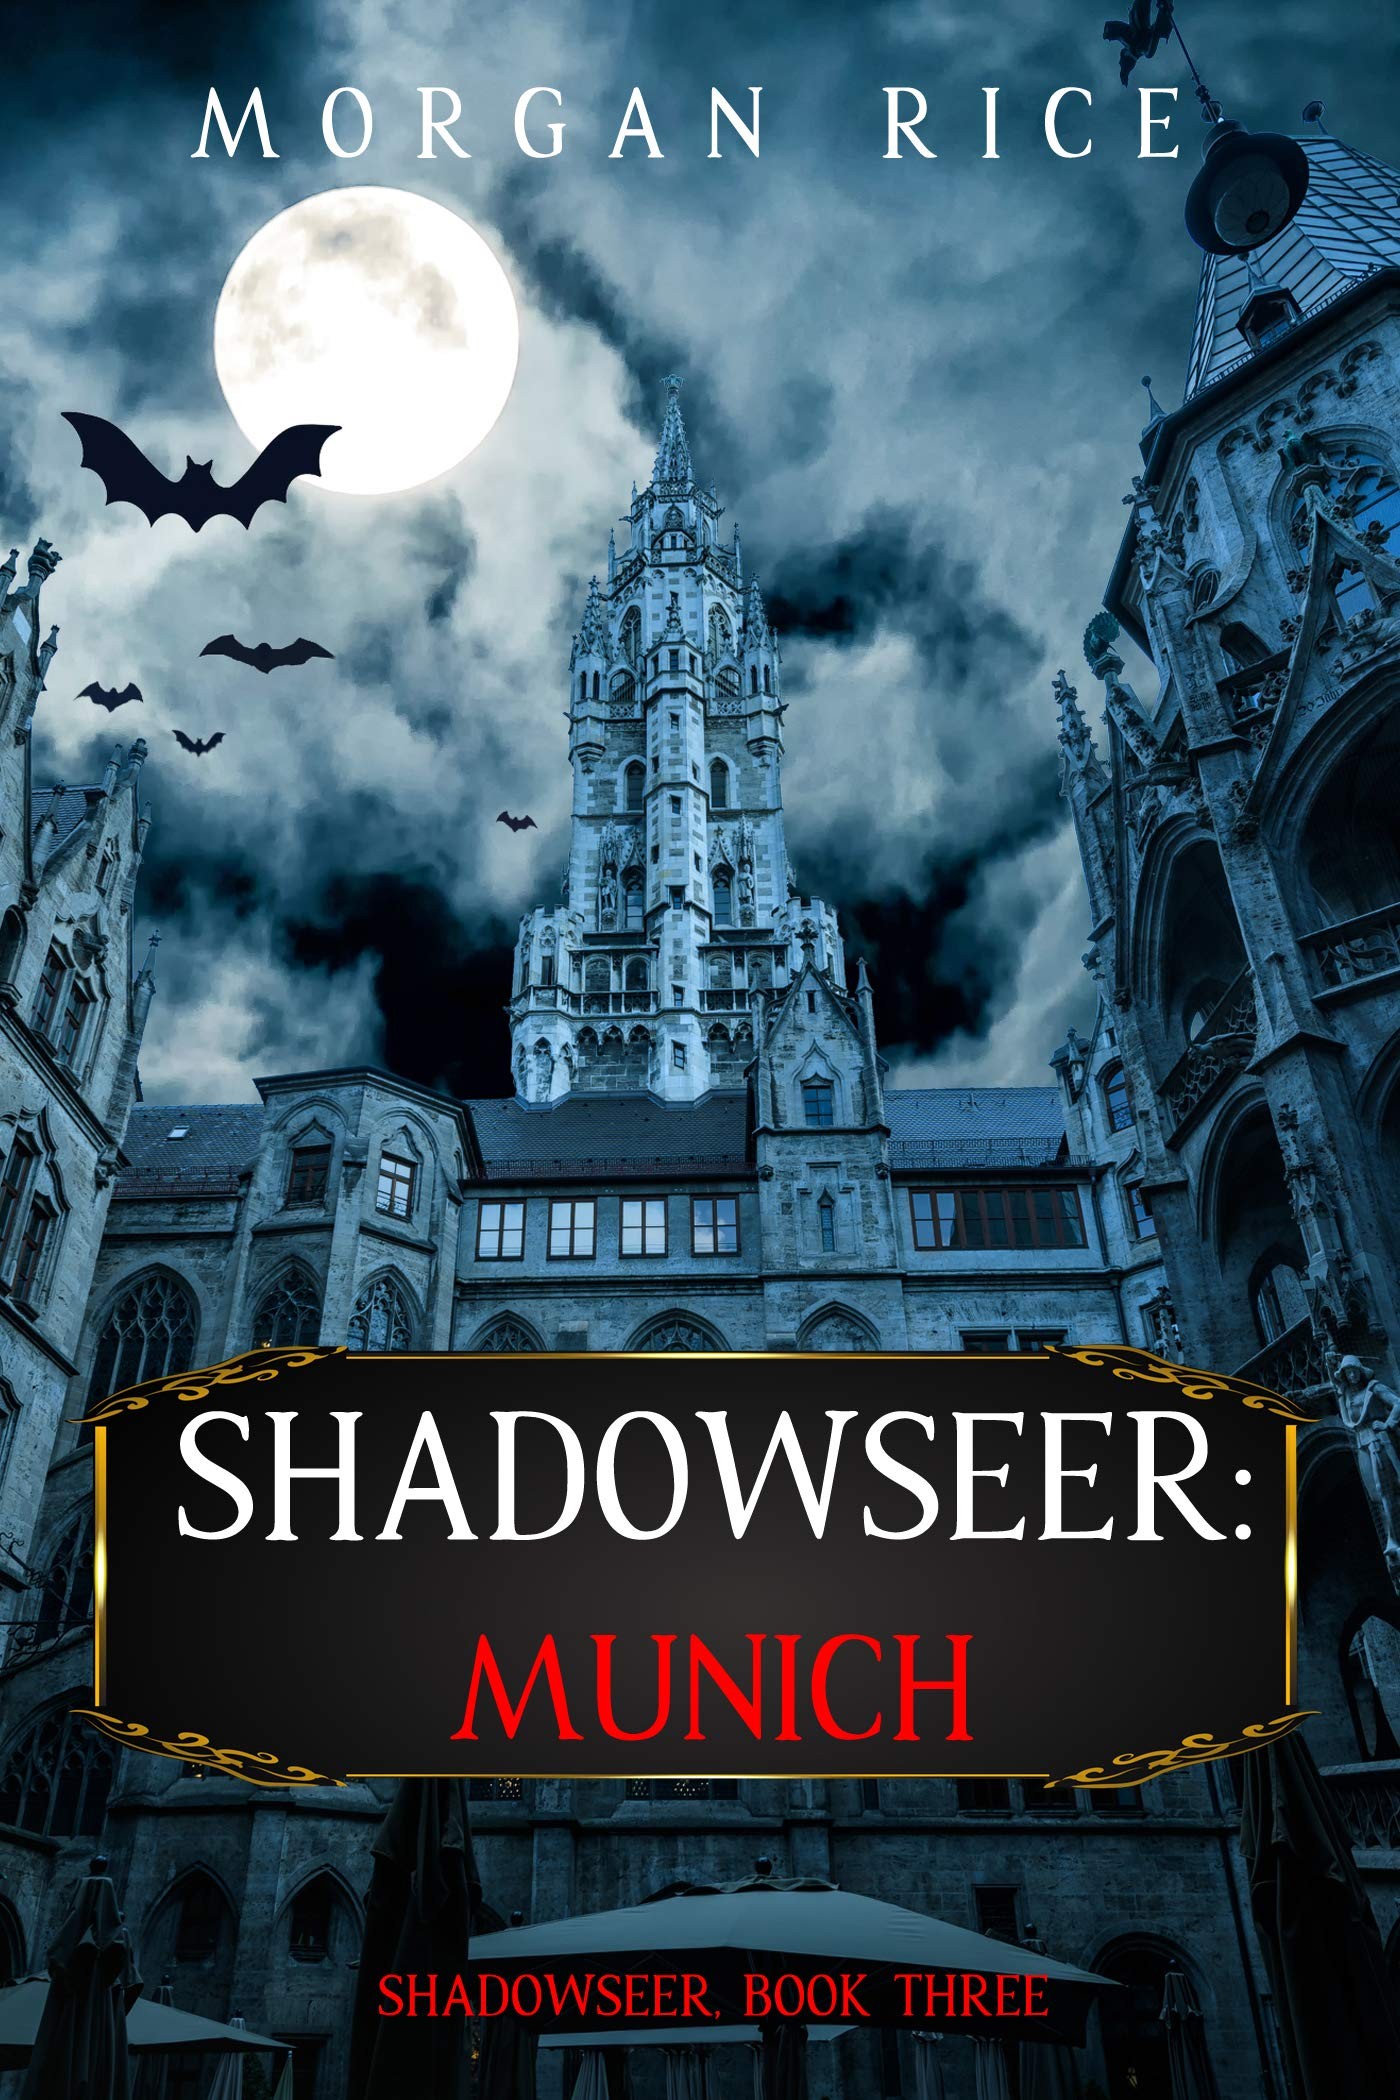 Shadowseer: Munich